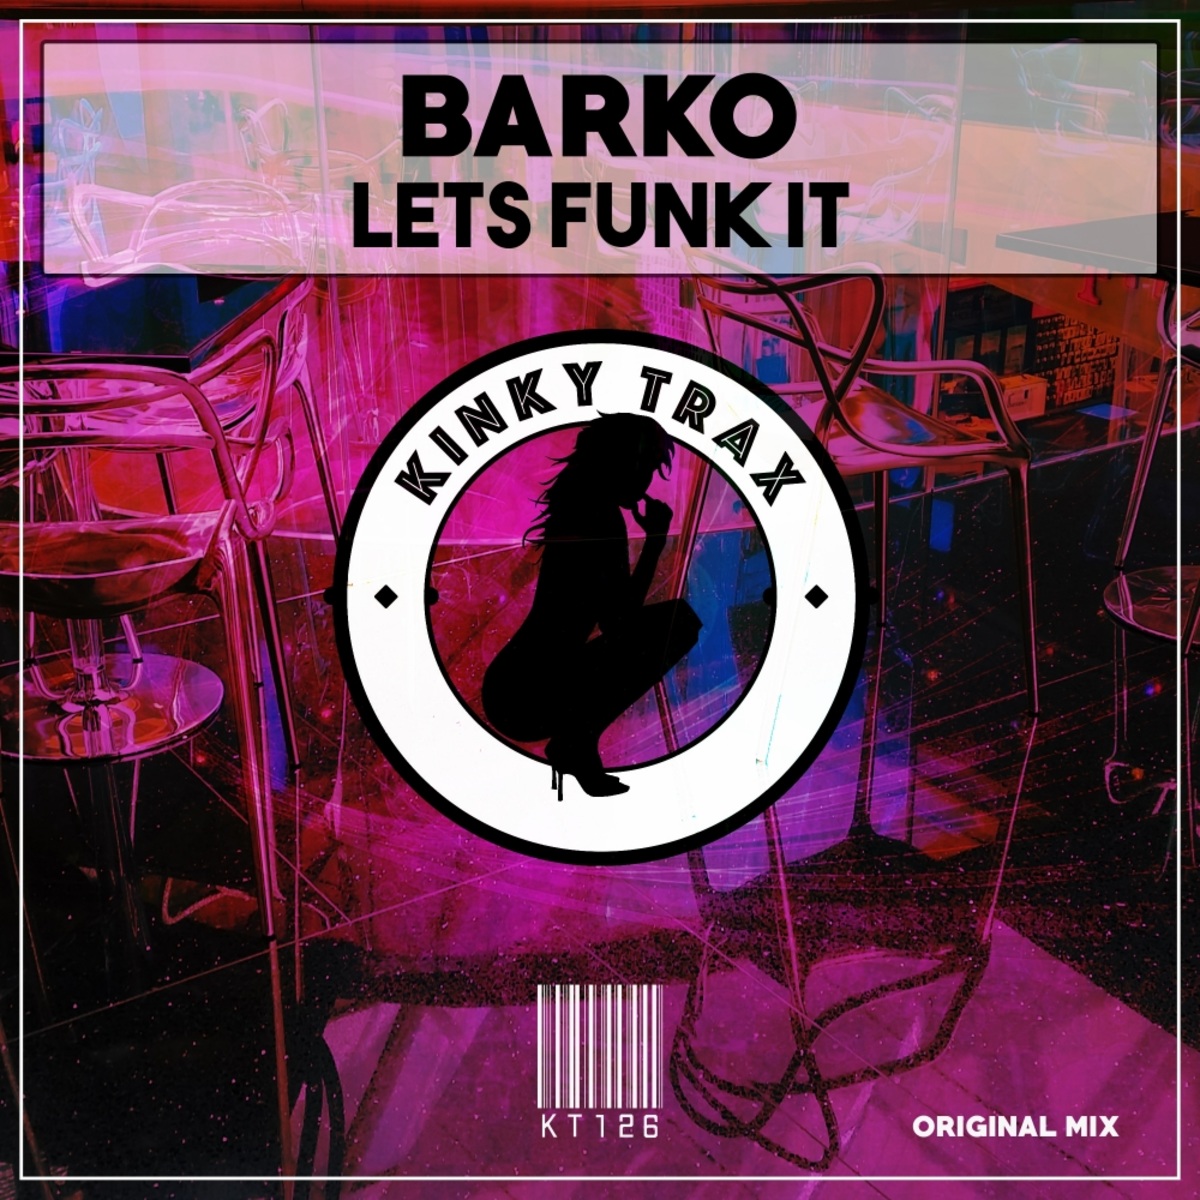 Barko - Lets Funk It / Kinky Trax